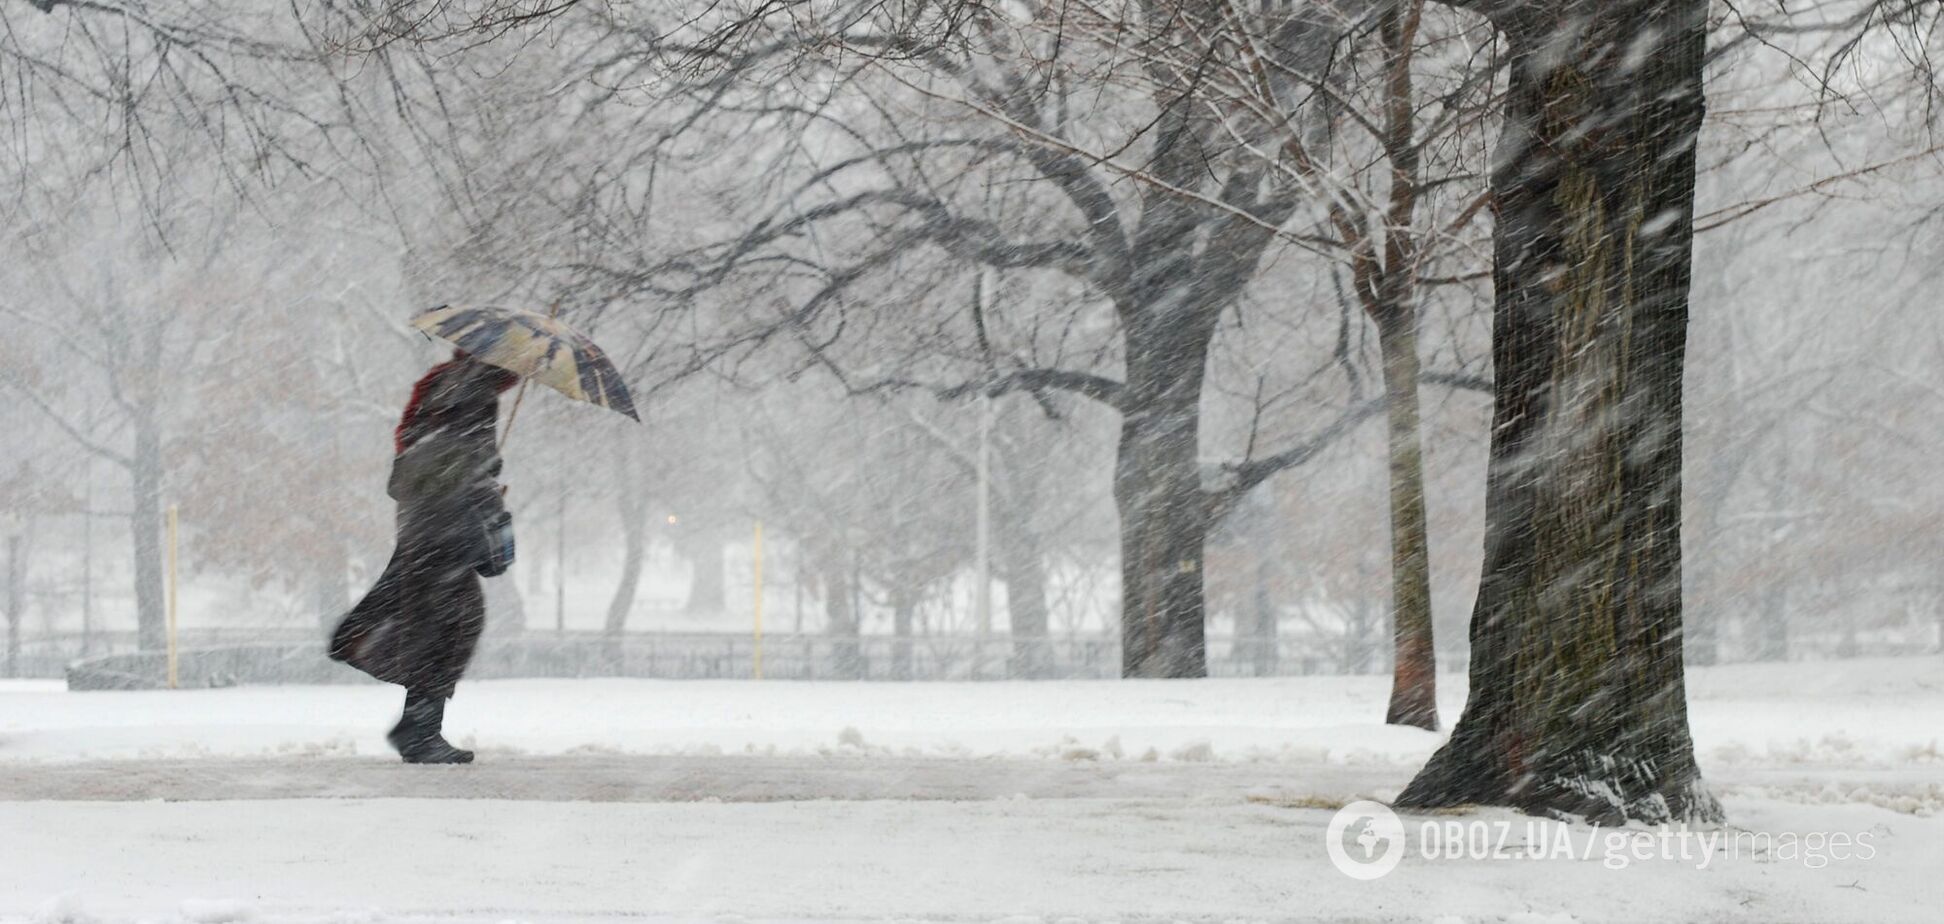 Часть Украины накроет снегом, на дорогах гололедица: синоптики дали прогноз погоды на субботу. Карта